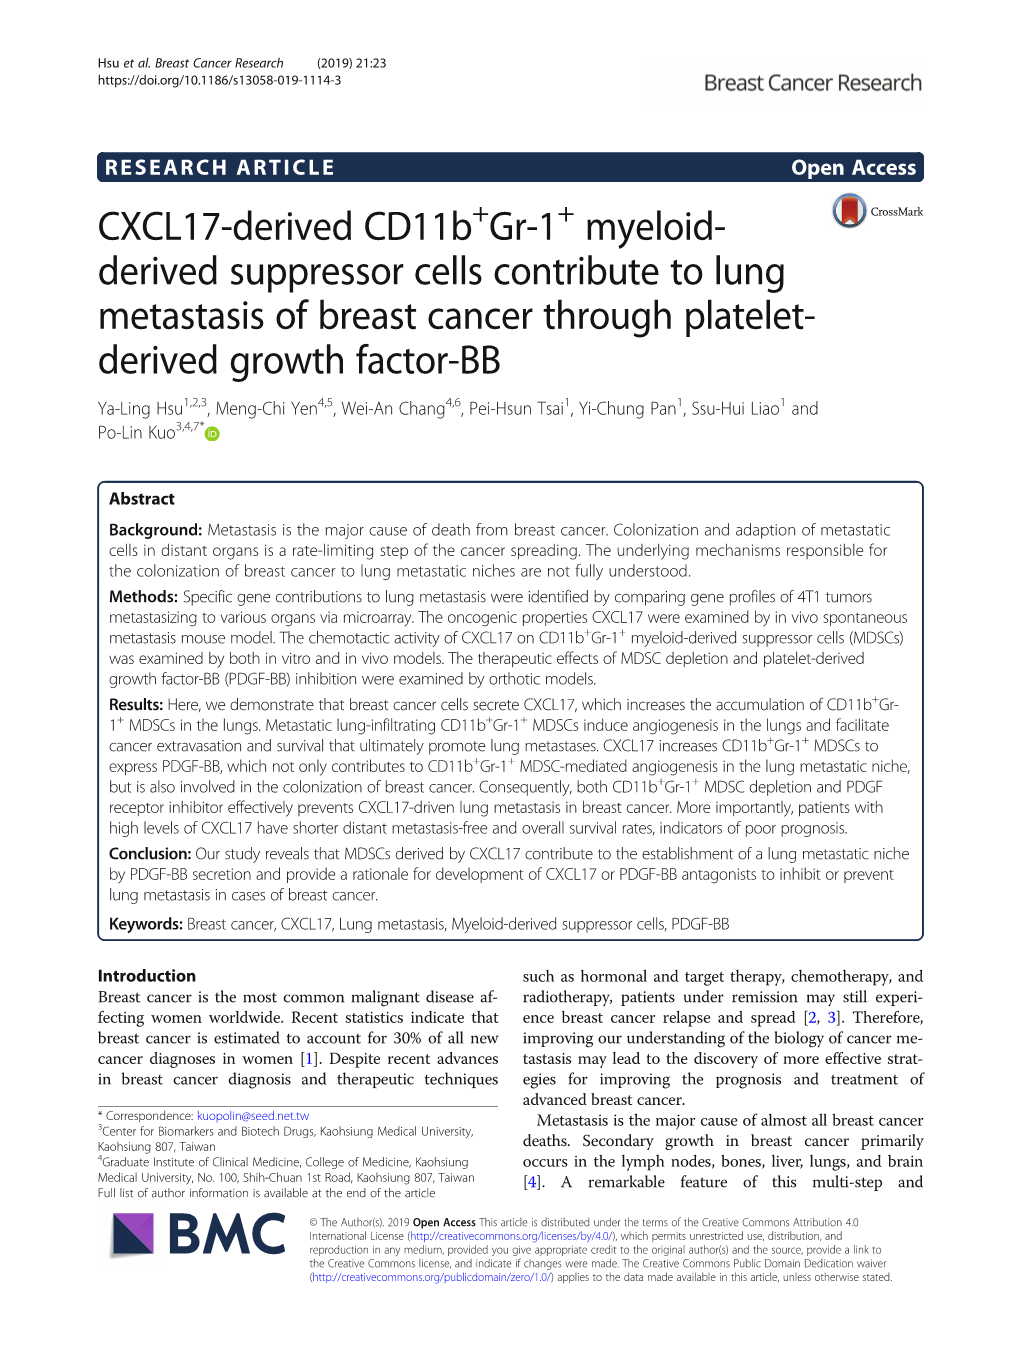 CXCL17-Derived Cd11b+Gr-1+ Myeloid-Derived Suppressor Cells